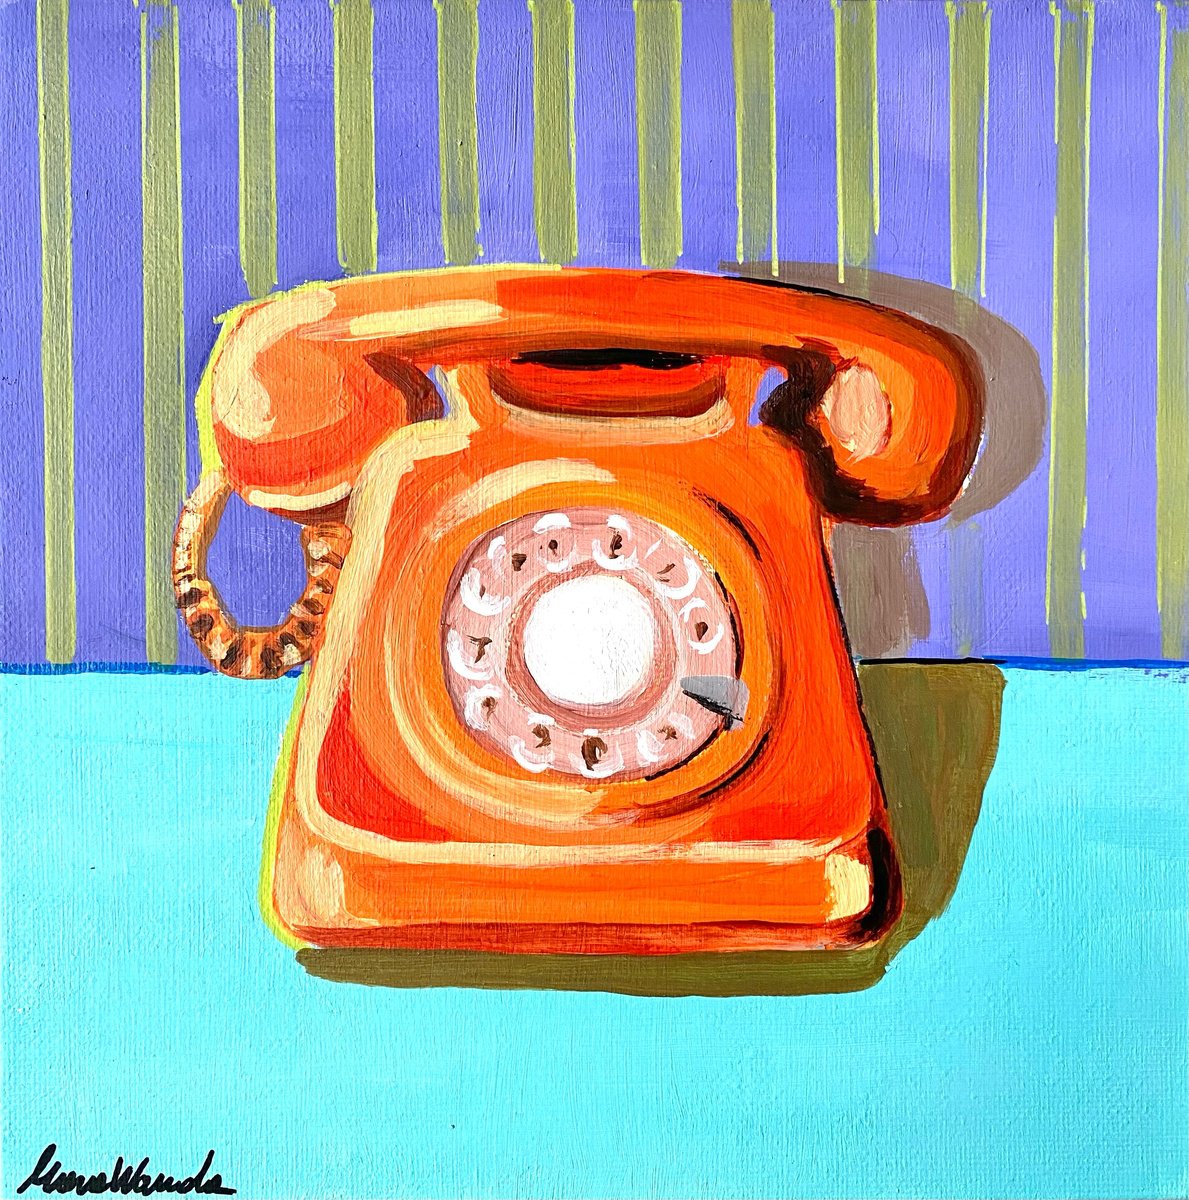 Telephone by Mara Wanda